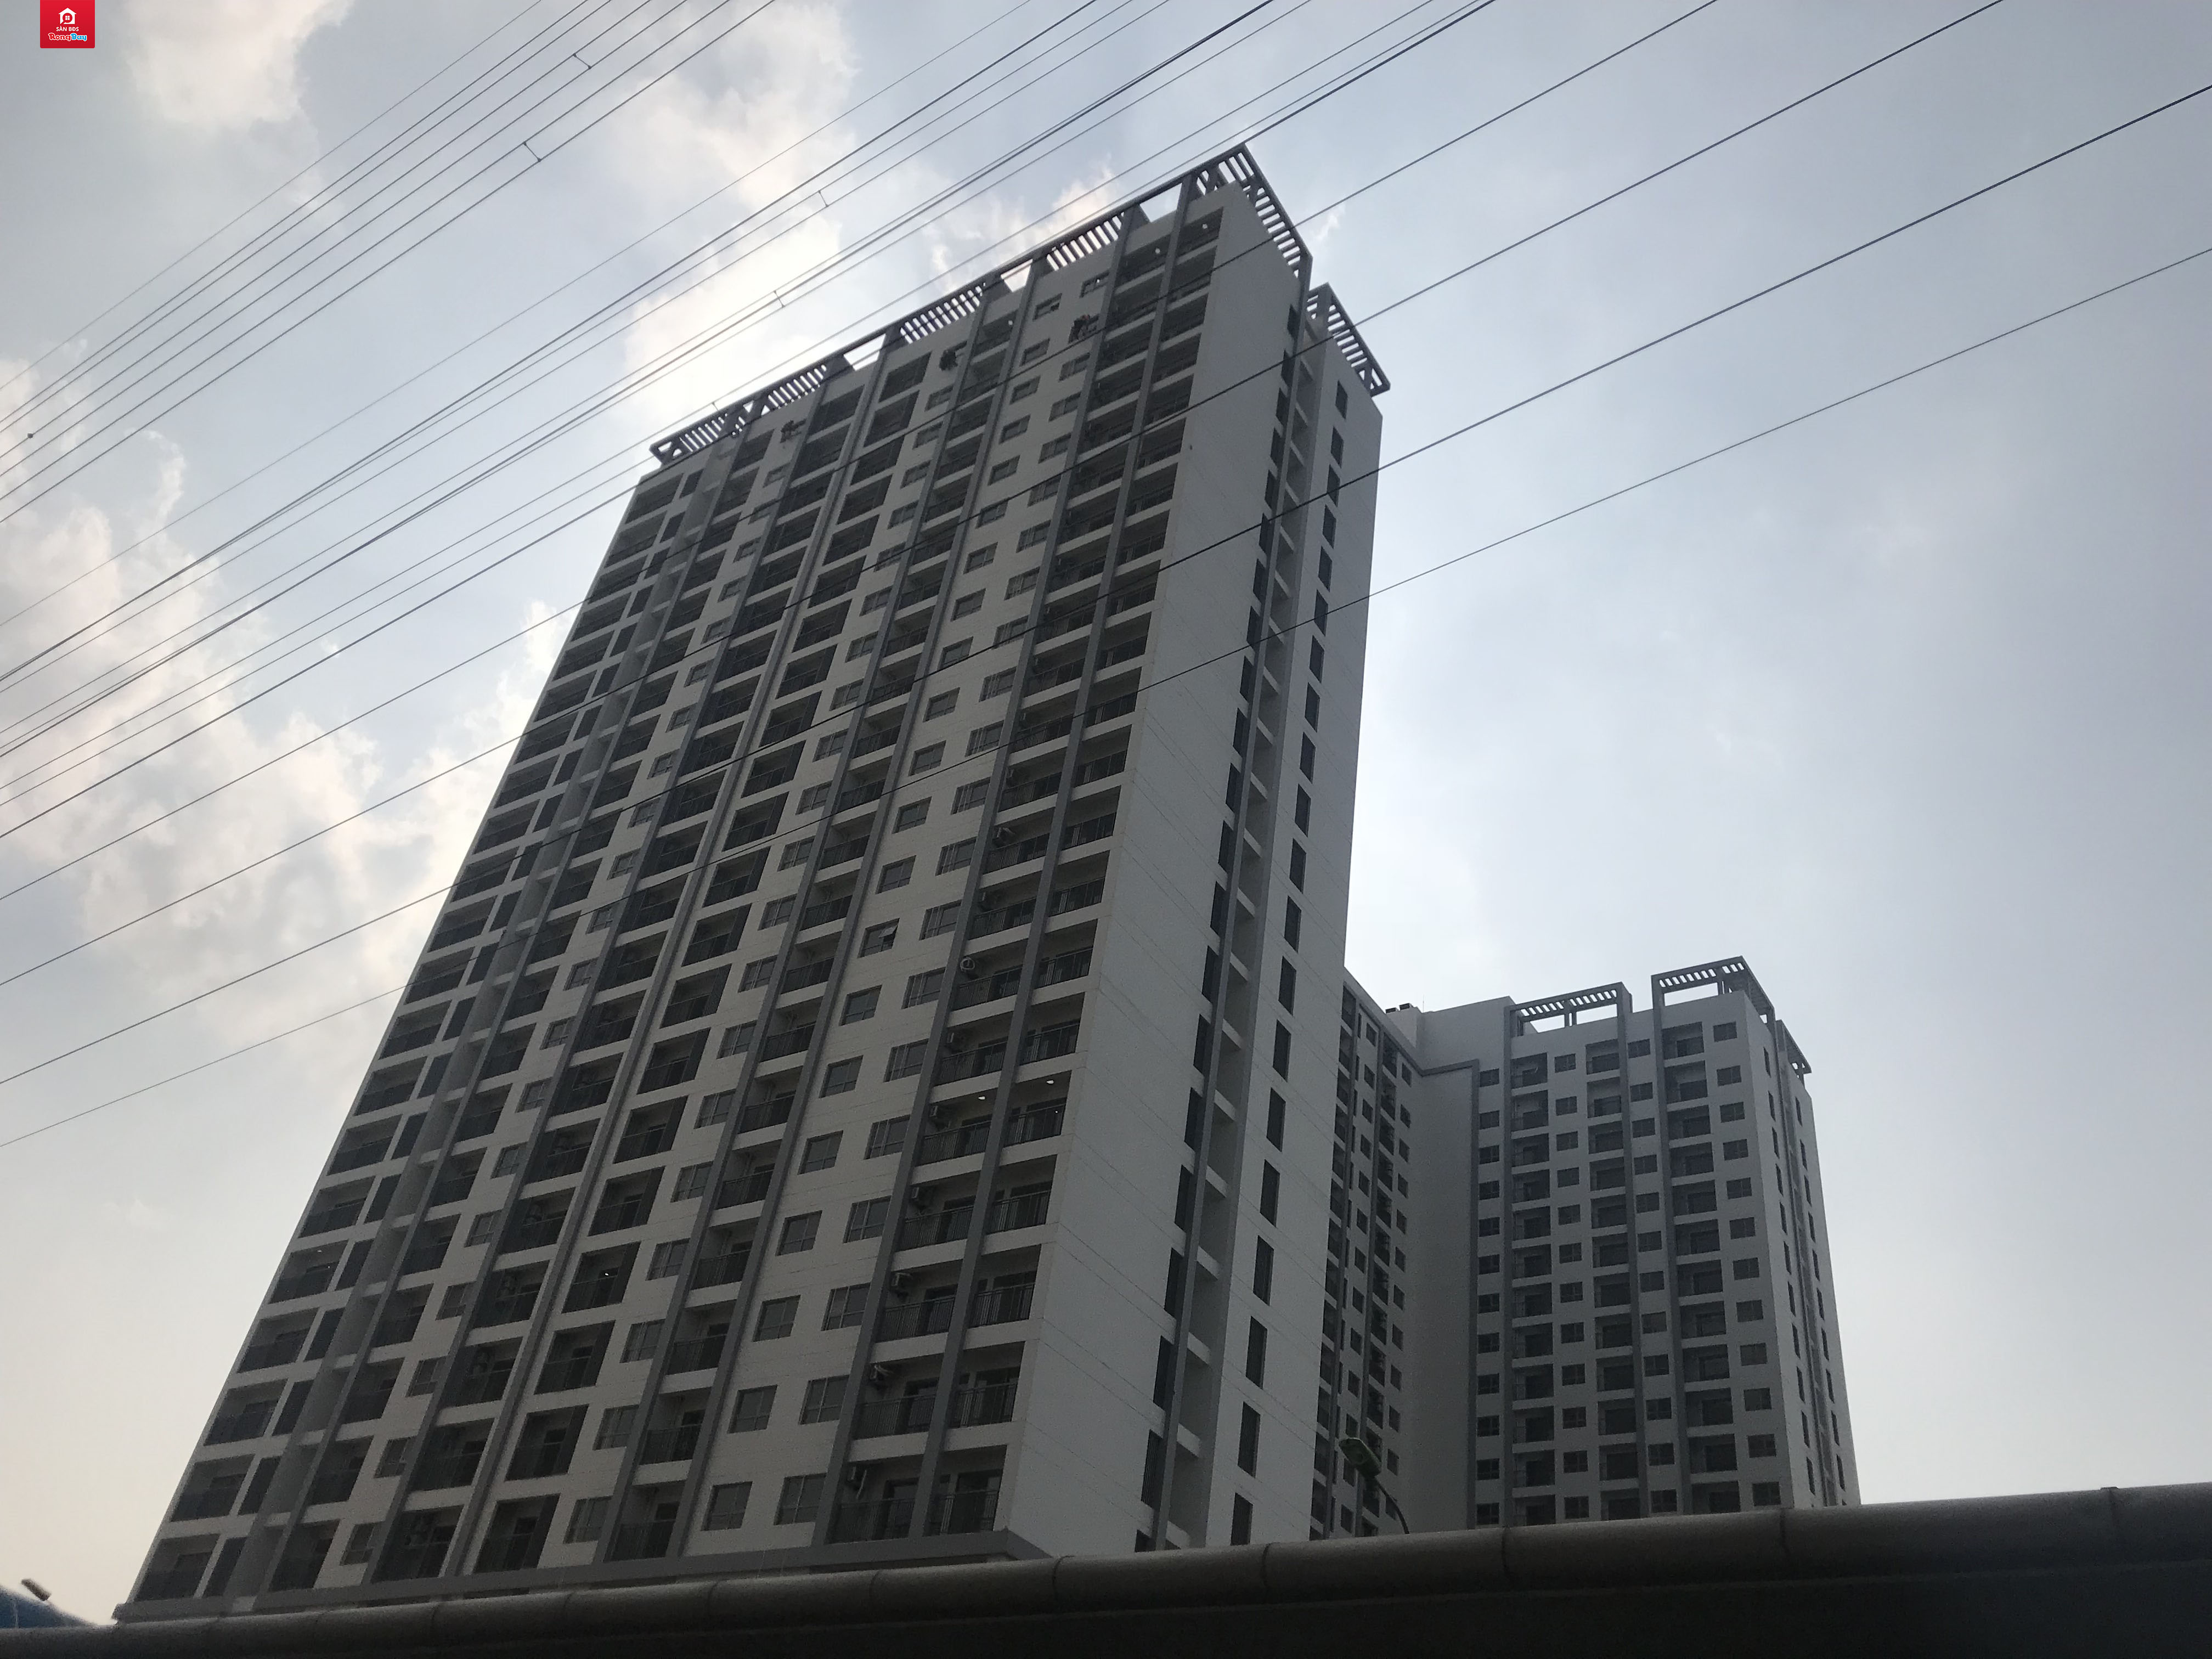 Chung cư - Anland Complex